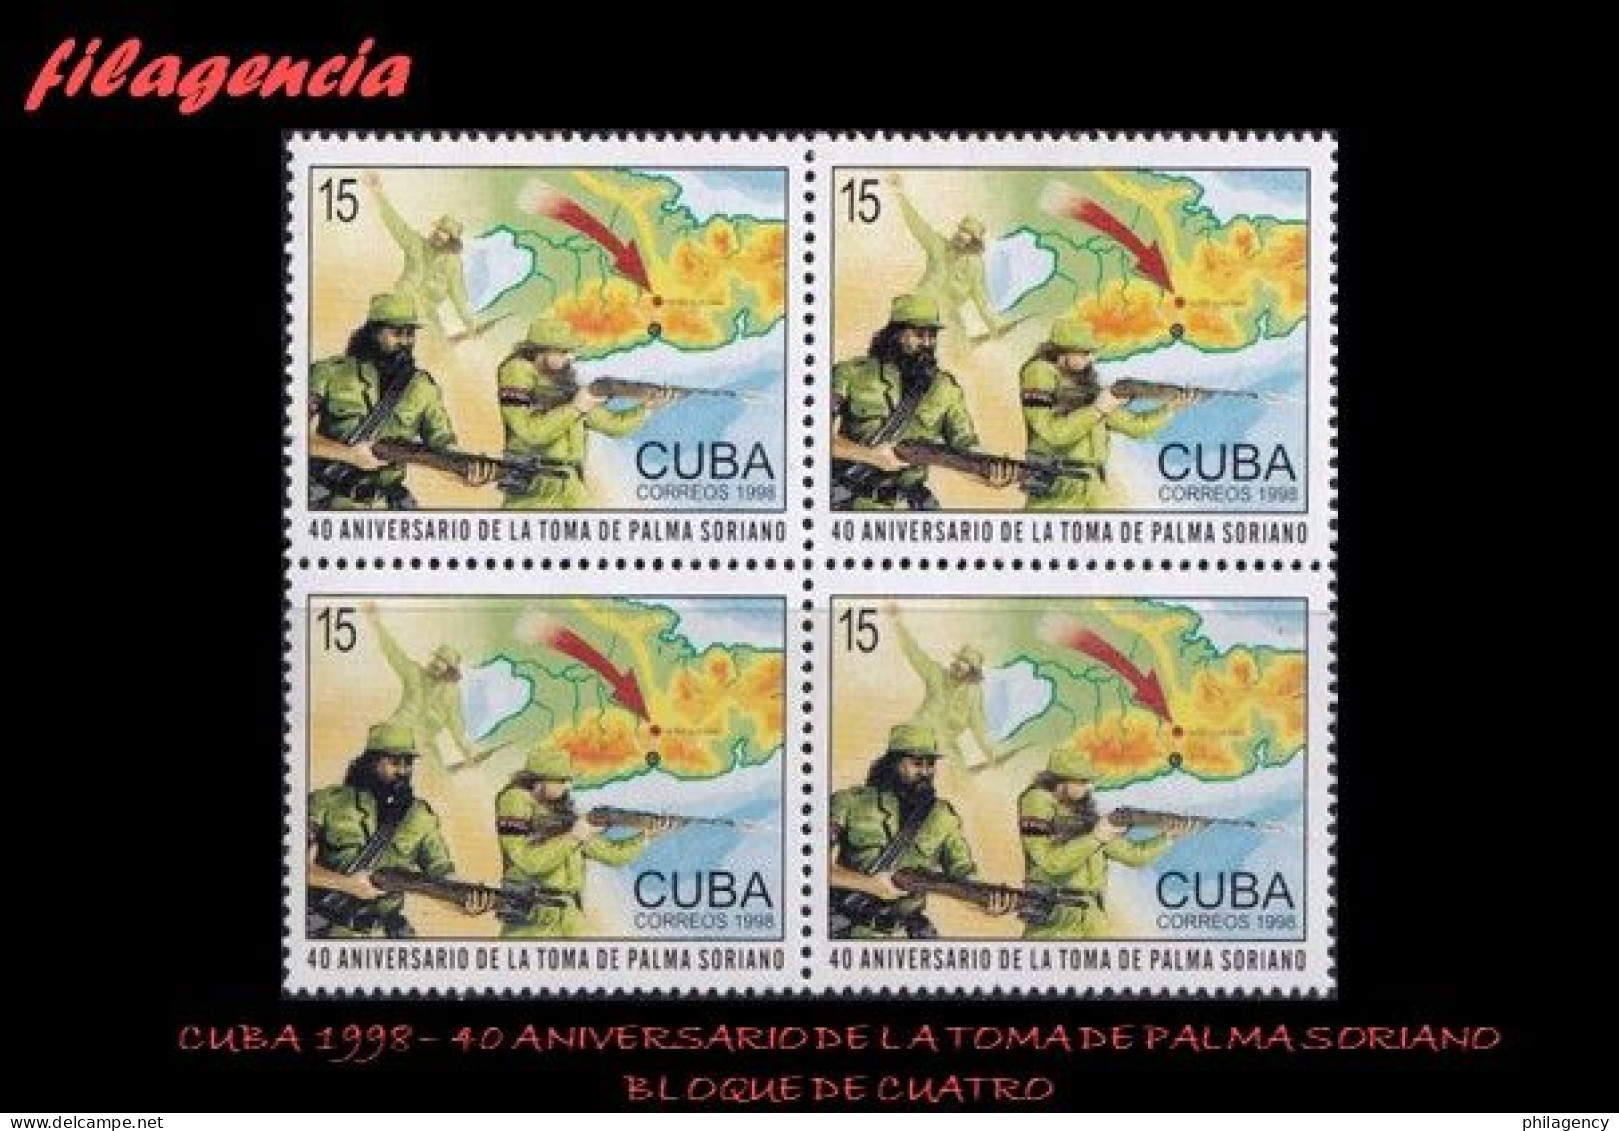 CUBA. BLOQUES DE CUATRO. 1998-35 40 ANIVERSARIO DE LA TOMA DE PALMA SORIANO - Nuevos